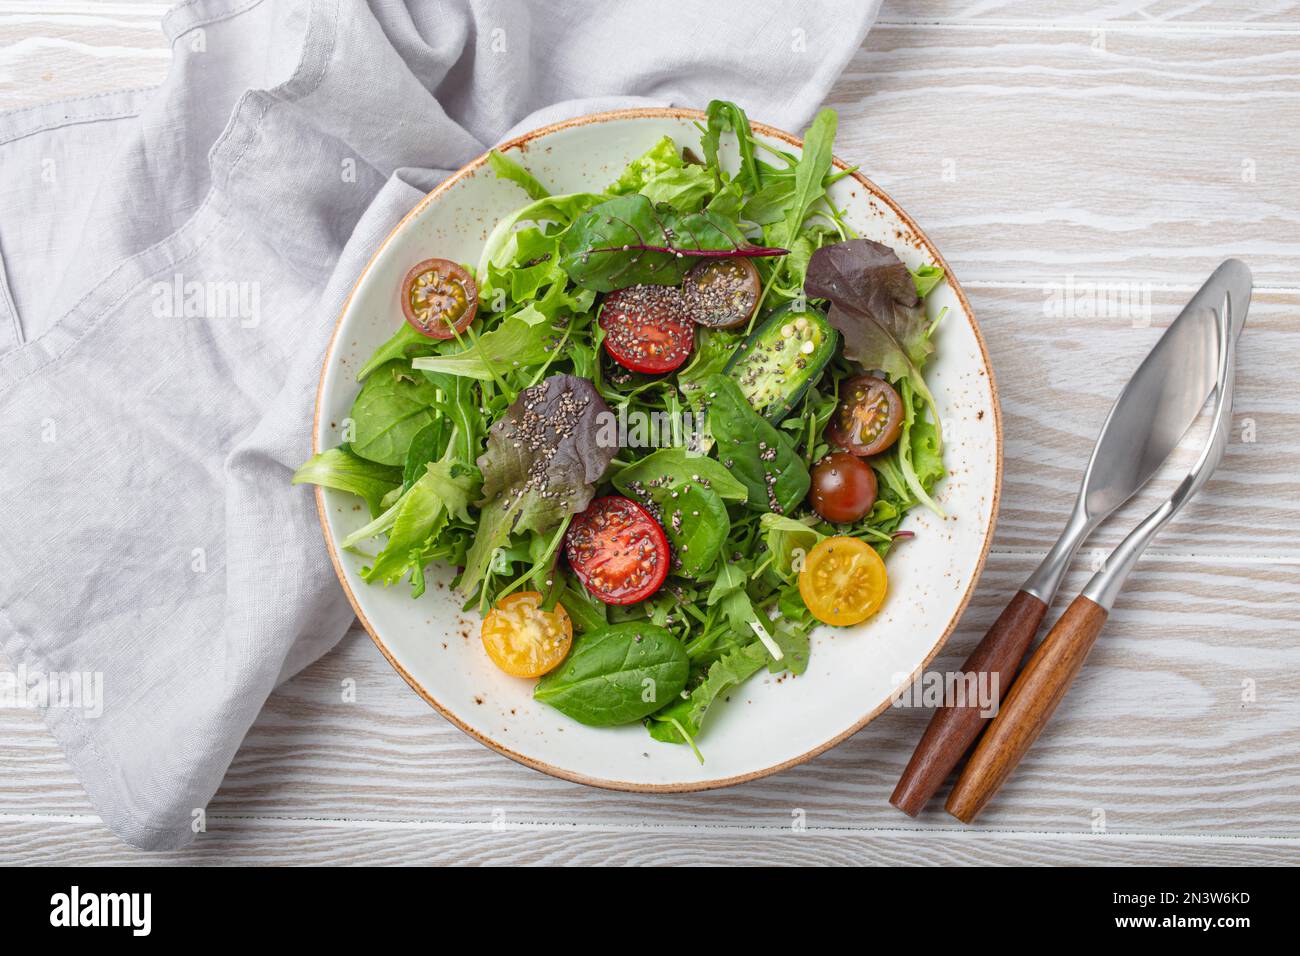 Gemüse, vegetarischer gesunder Salat mit roten gelben Kirschtomaten, grünen Blättern und Chiasamen auf weißem Teller auf weißem Holz, rustikalem Hintergrund Stockfoto